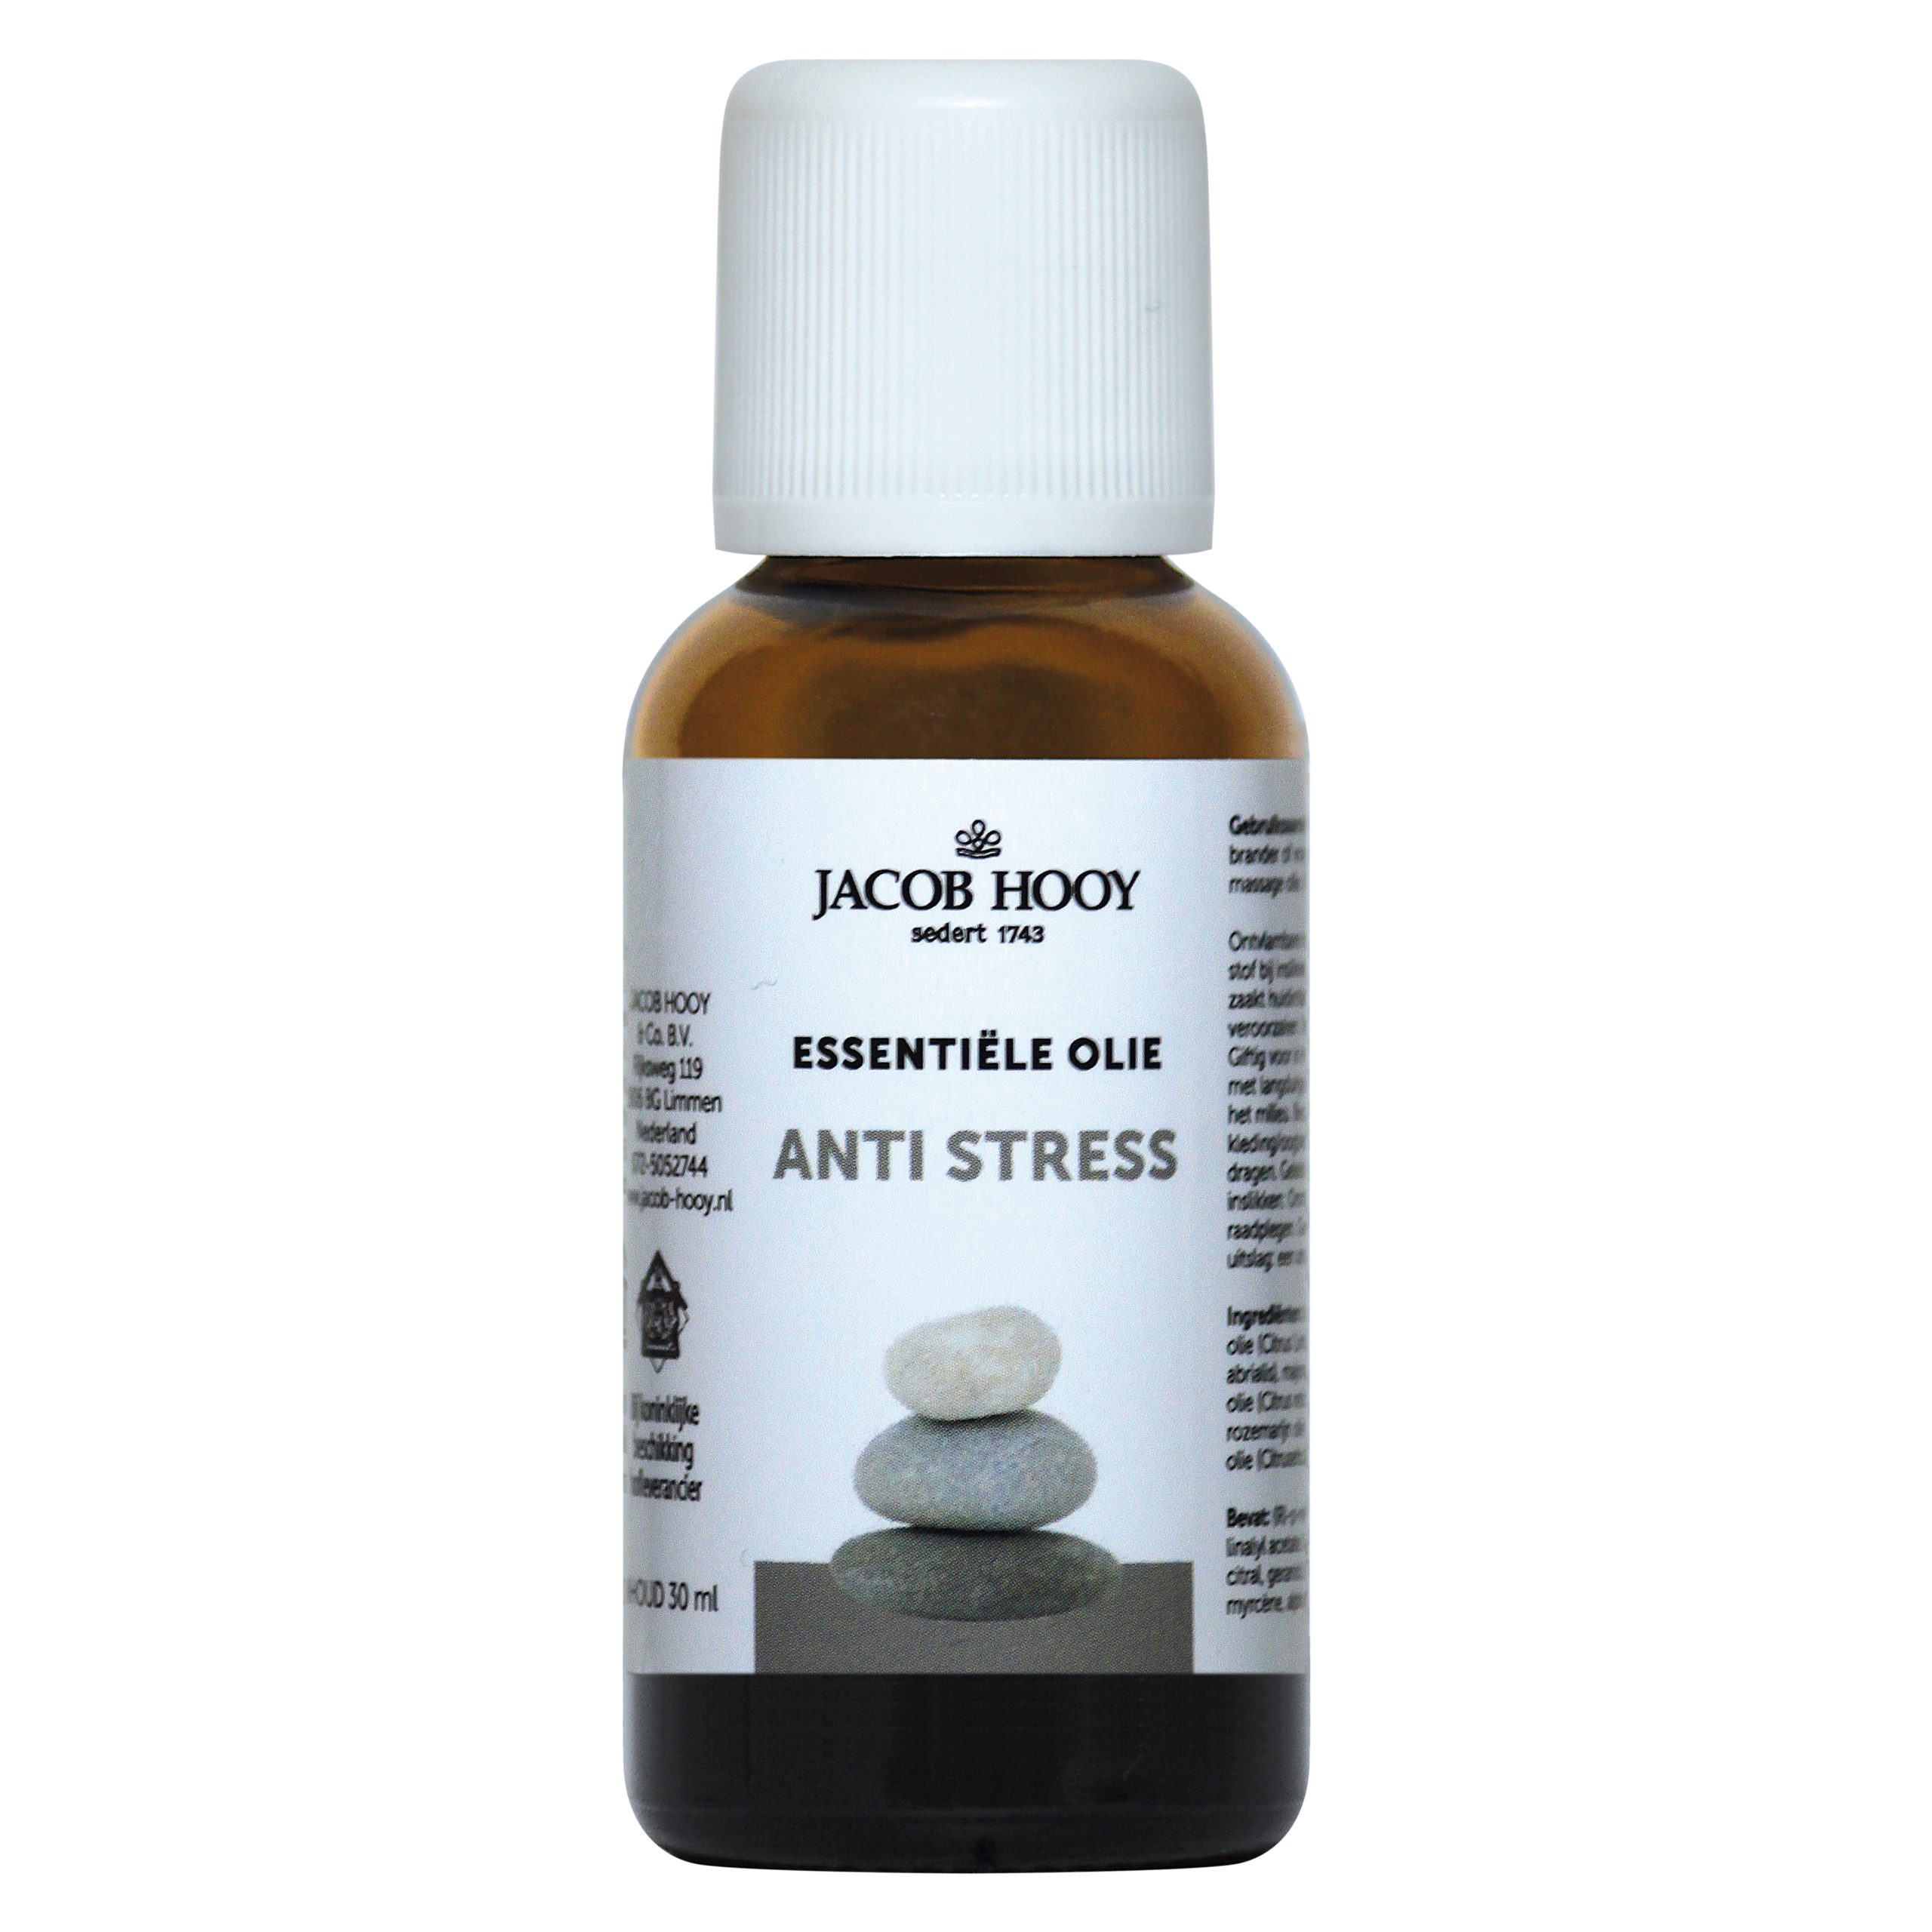 Essentiële olie Anti stress 30ml